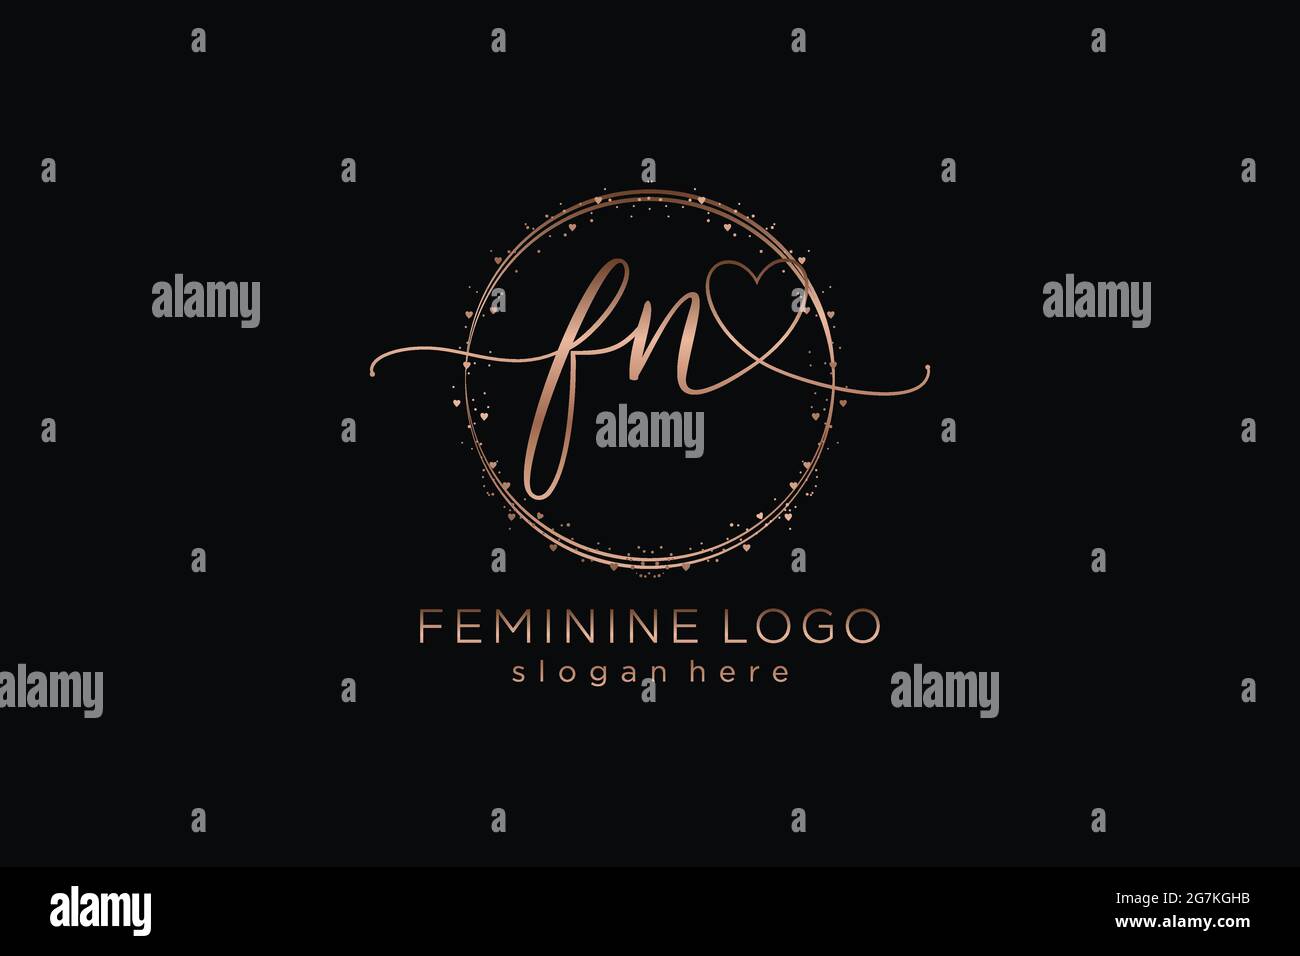 Logo FN manoscritto con logo vettoriale a forma di cerchio di matrimonio iniziale, moda, floreale e botanico con template creativo. Illustrazione Vettoriale